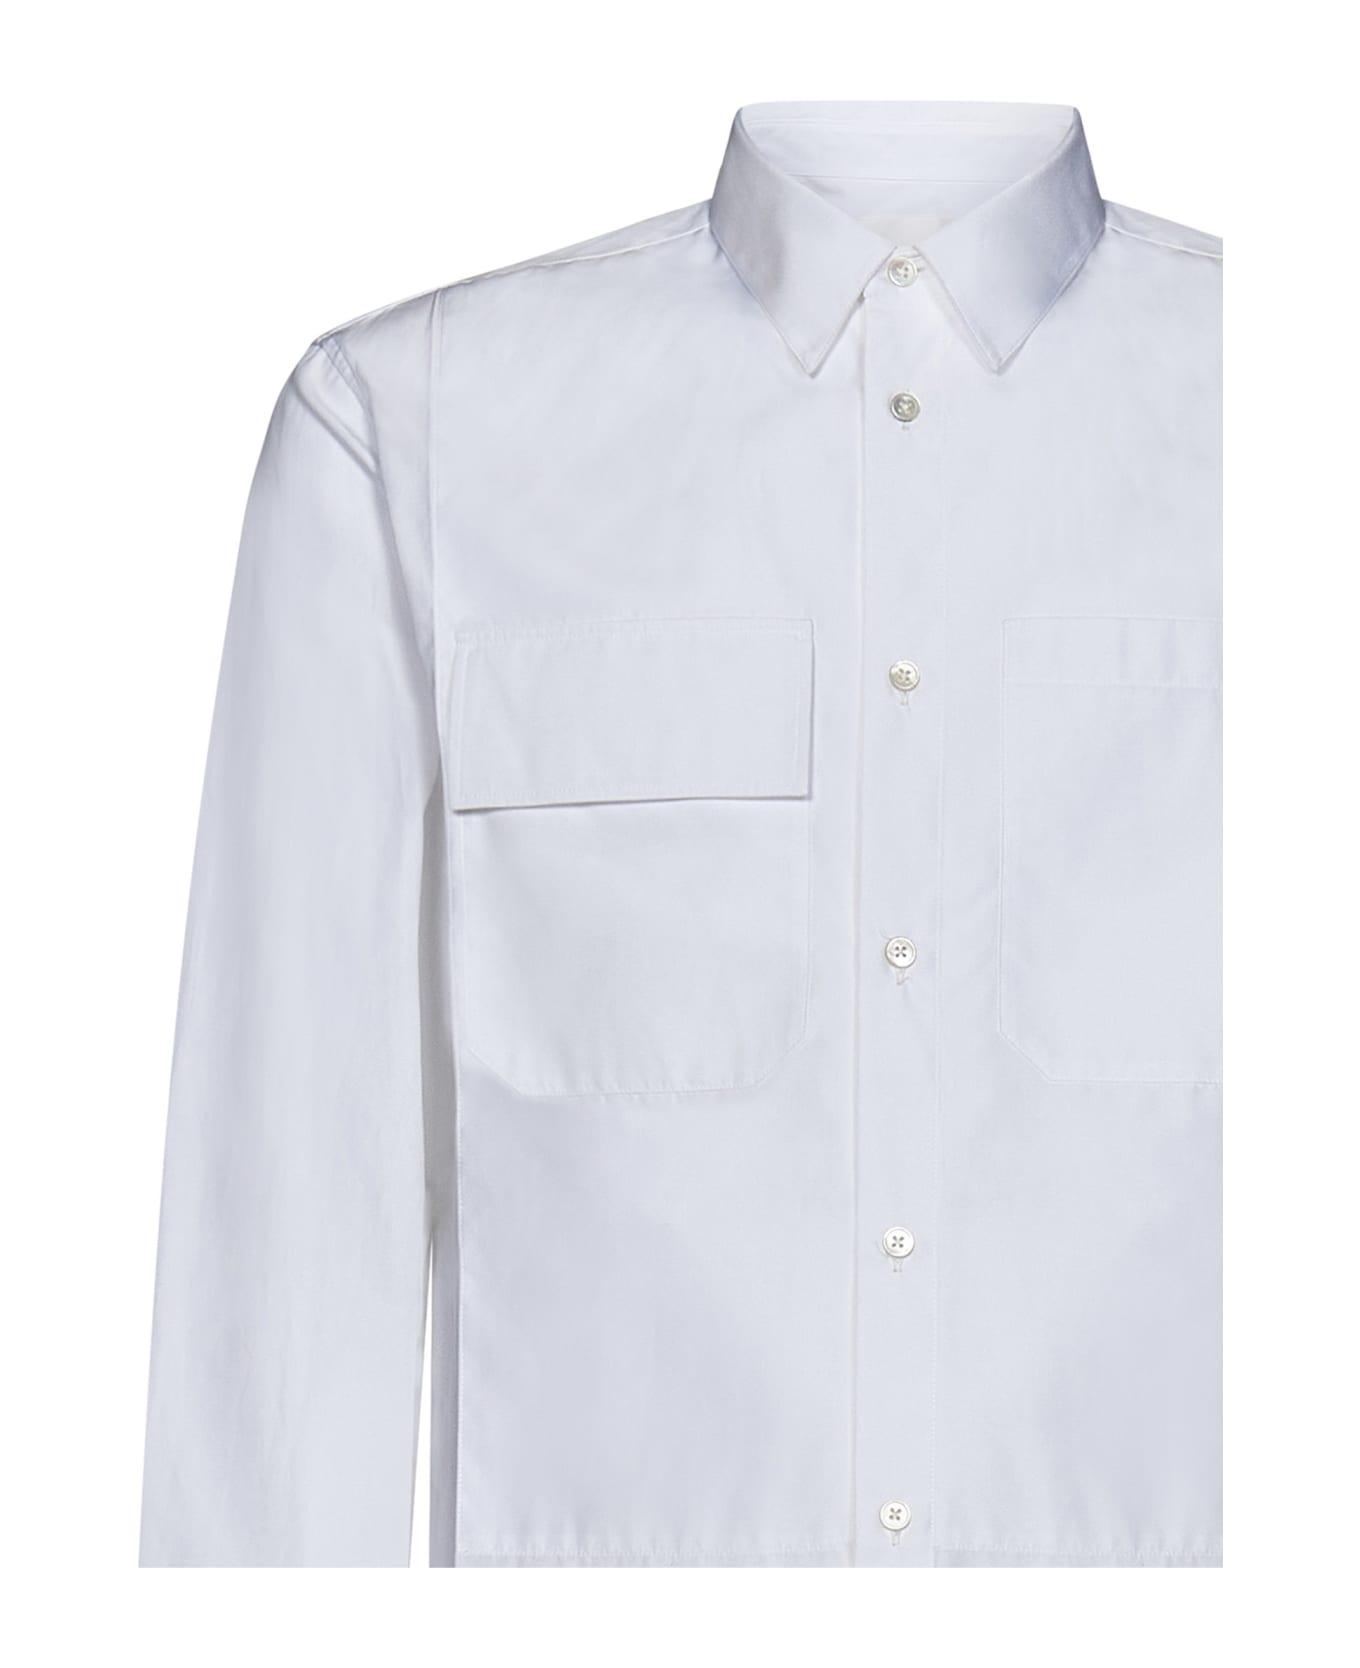 Jil Sander Buttoned Long-sleeved Shirt - White シャツ